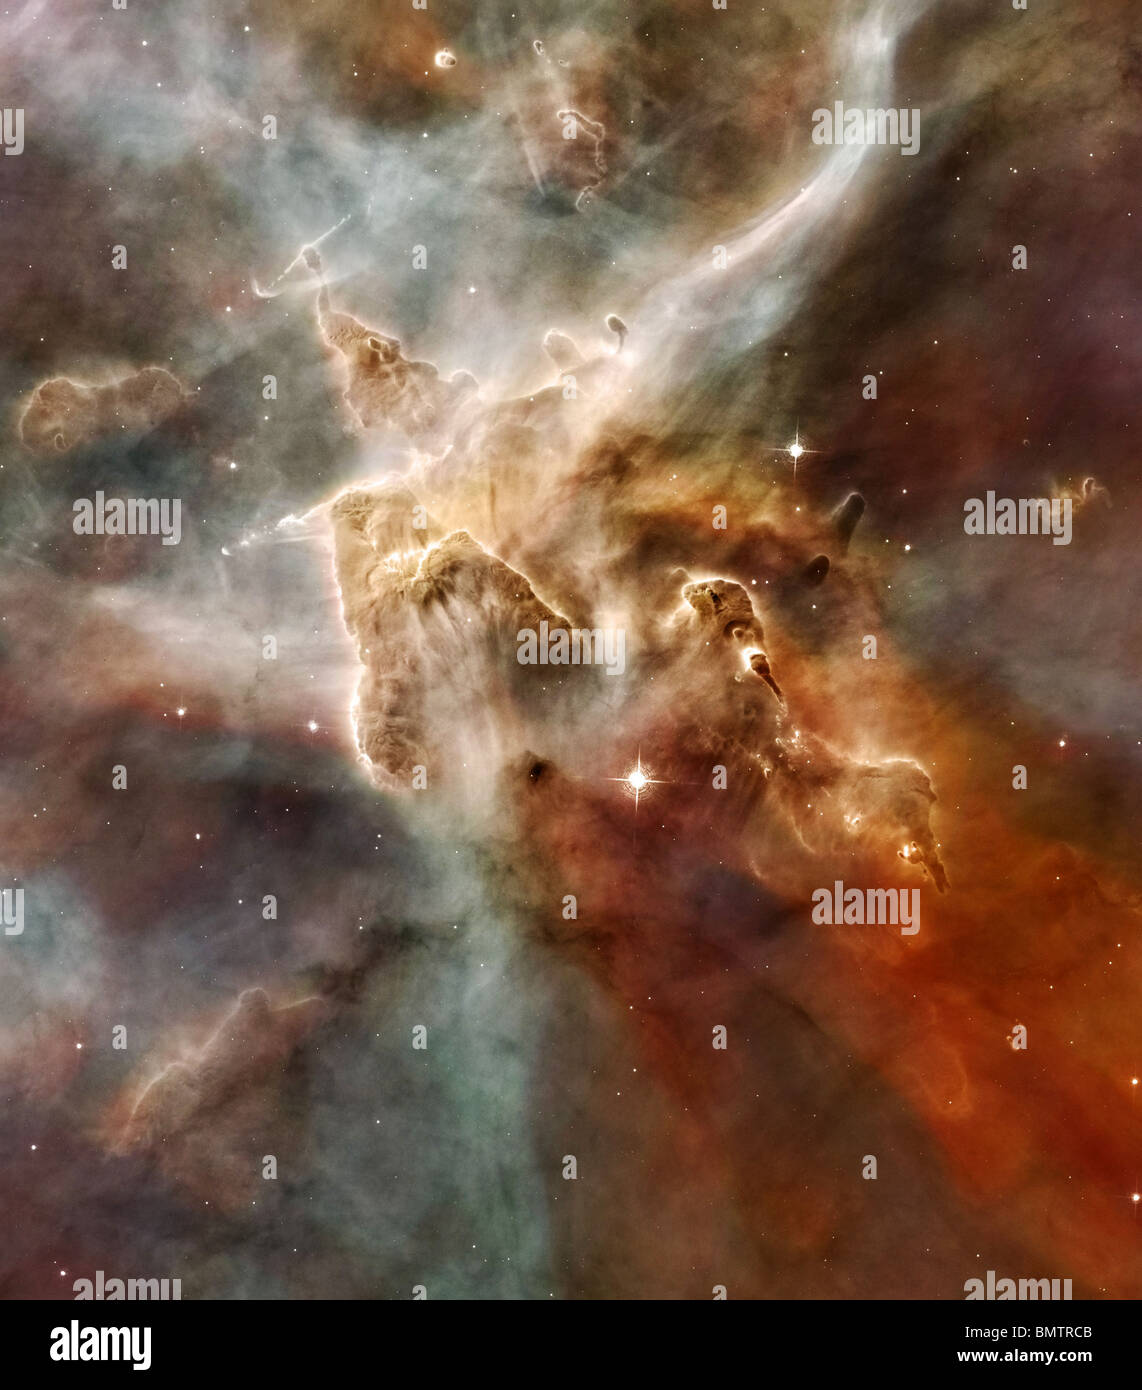 Erweiterte Version der Carinanebel Photographd vom Hubble-Weltraumteleskop. Bitte Kredit Nasa Stockfoto